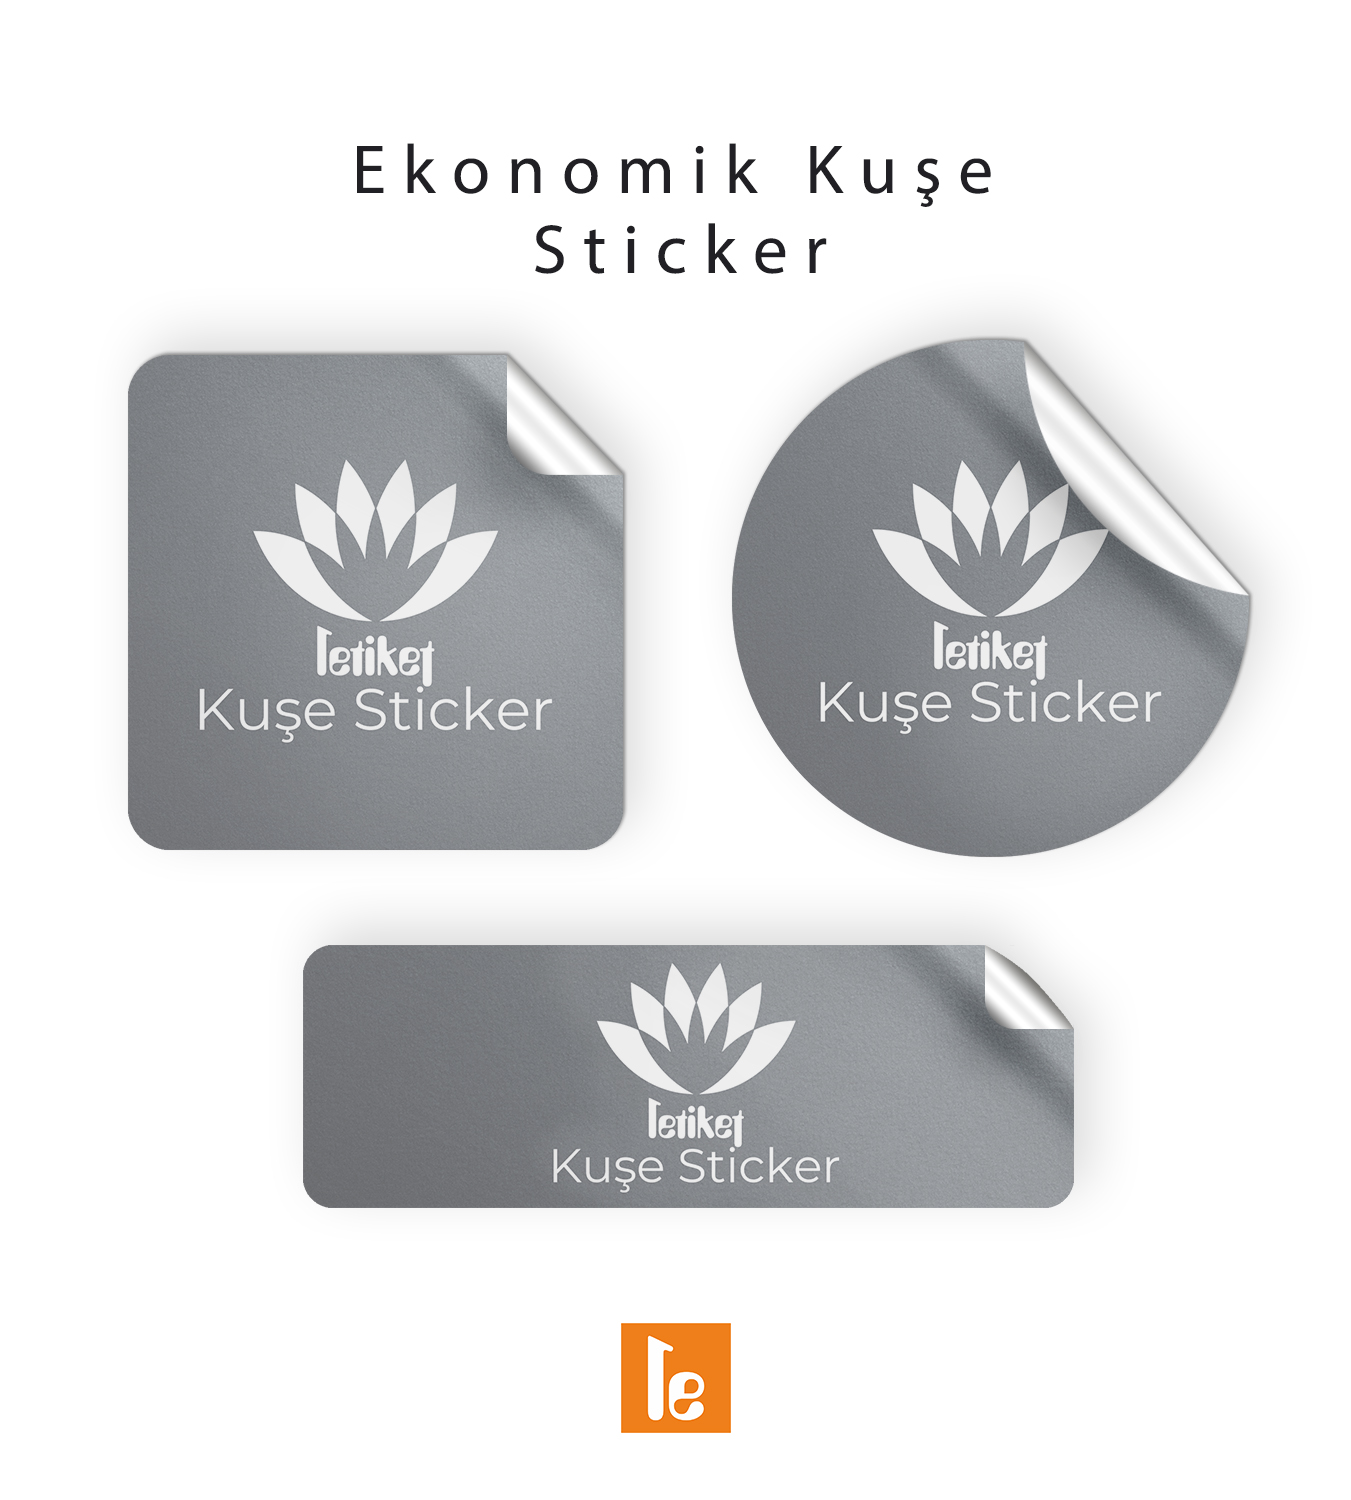 8.2×15.6 cm Ekonomik Düz Kesim Sticker/Etiket